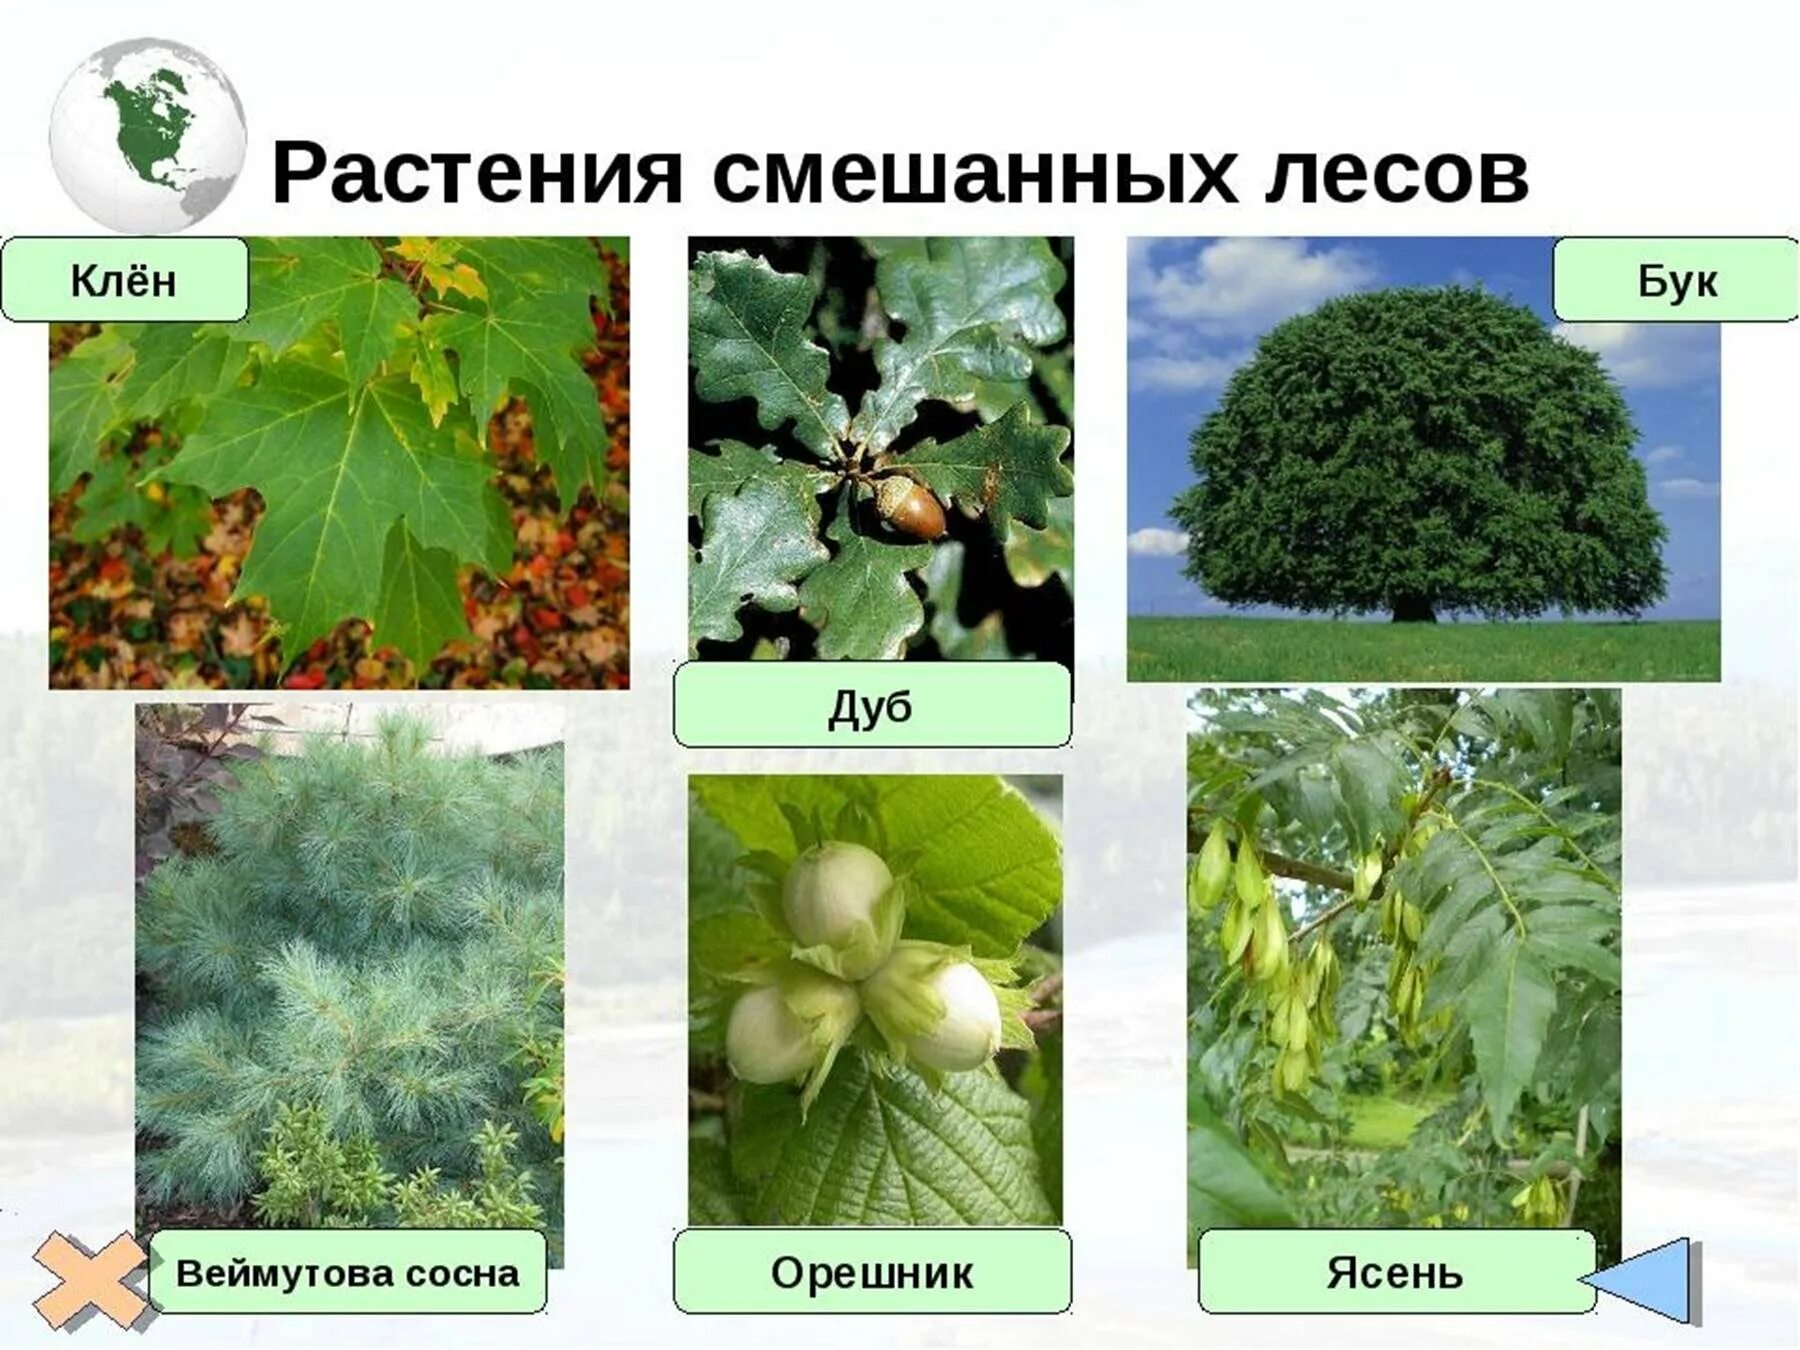 Растения живущие в россии. Широколиственный лес растения. Растения смешанных лесов. Растенмясмешанных лесов. Растения в смешанных лесах.